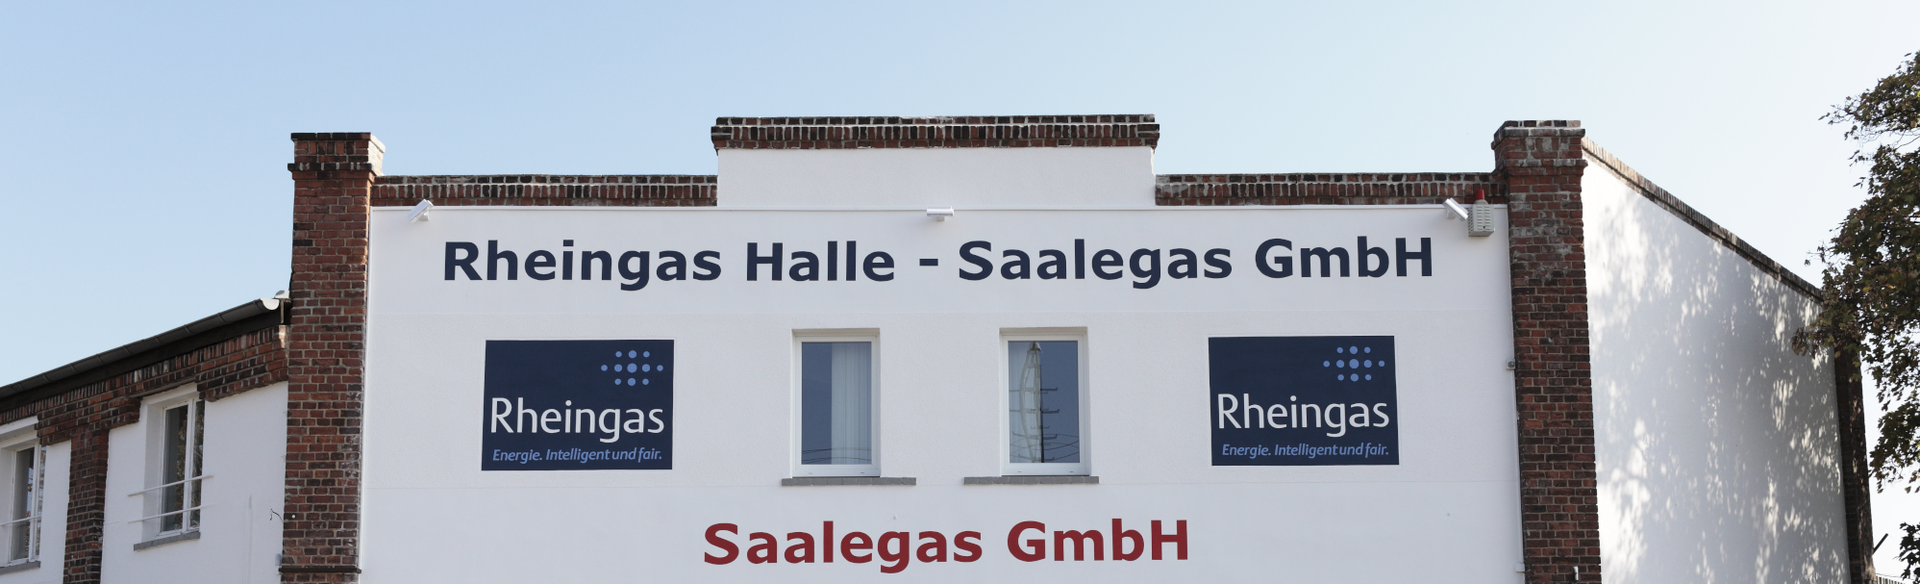 Bild vom Eingang des Rheingas-Shops in Halle (Saale) inkl. Autogas-Tankstelle